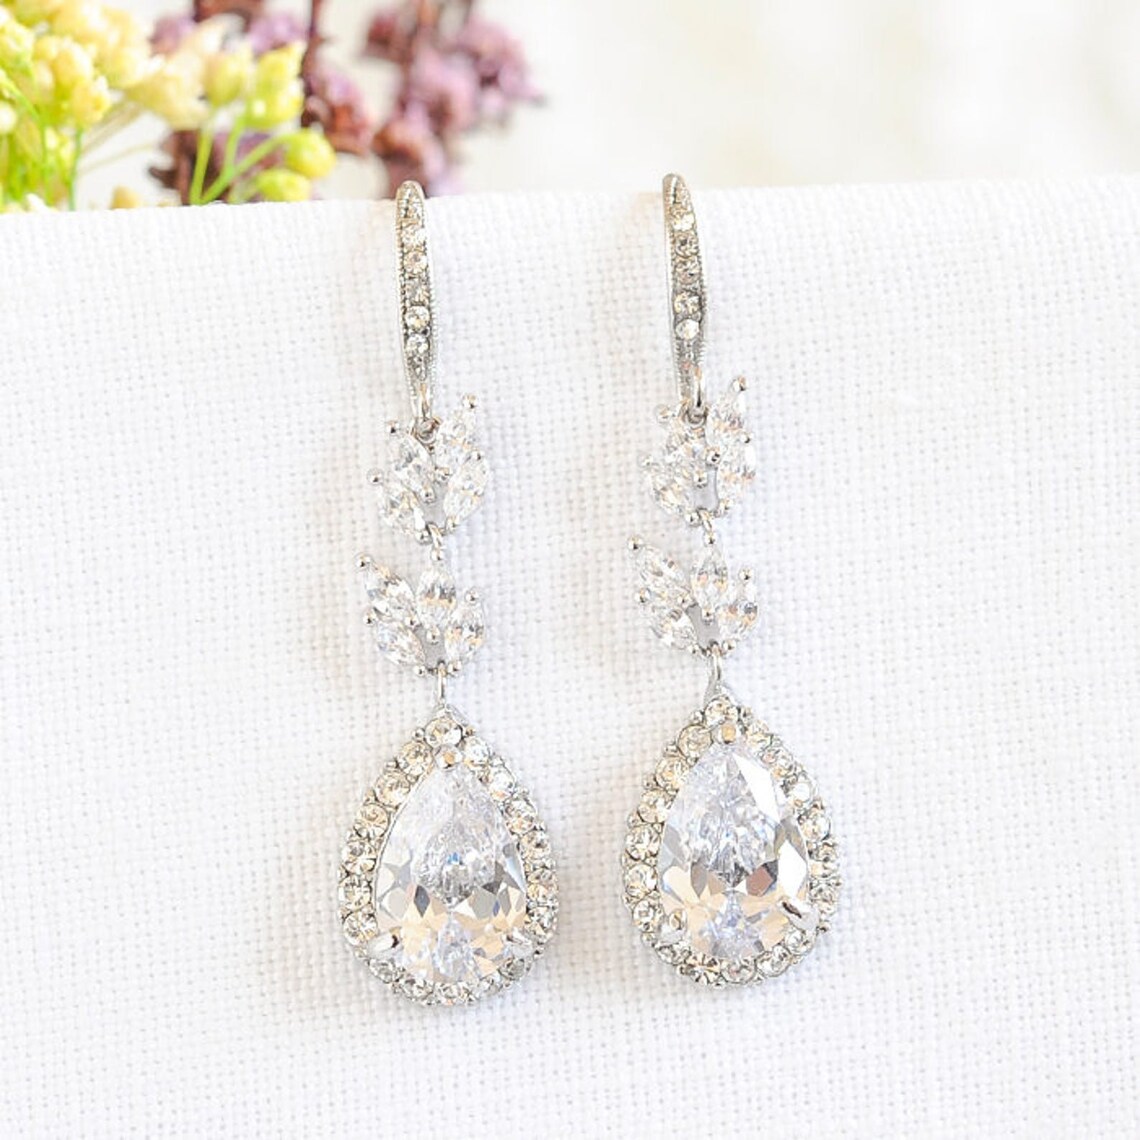 Crystal Bridal Earrings Rose Gold Wedding Earrings Leaf Etsy